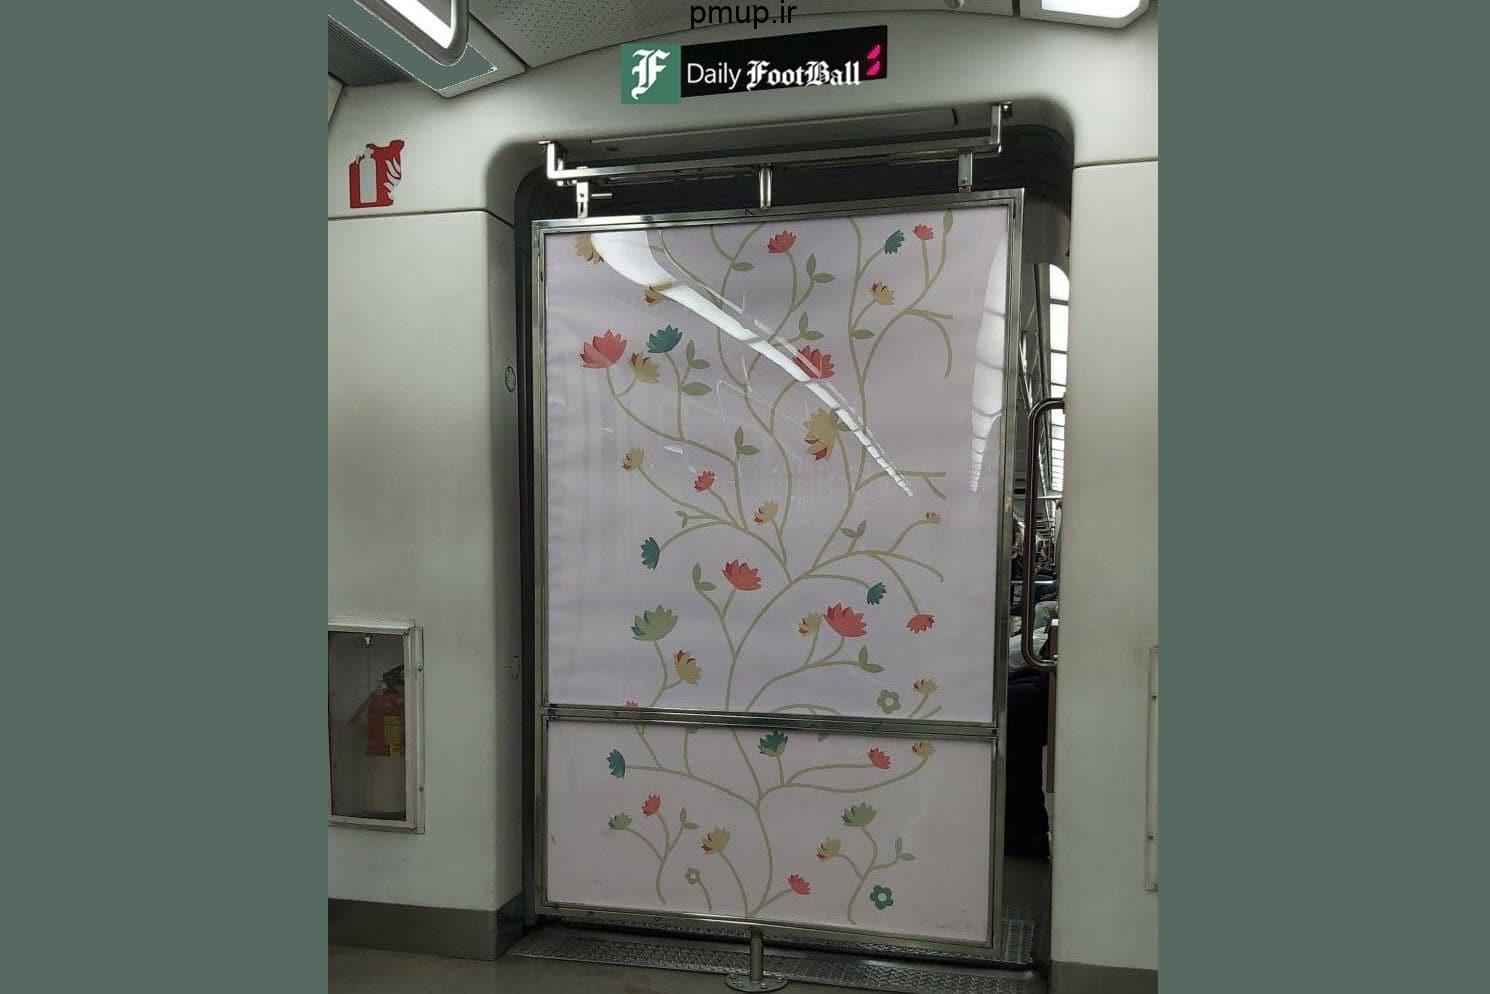 عکس| نصب پرده بین واگن زنان و مردان در مترو تهران